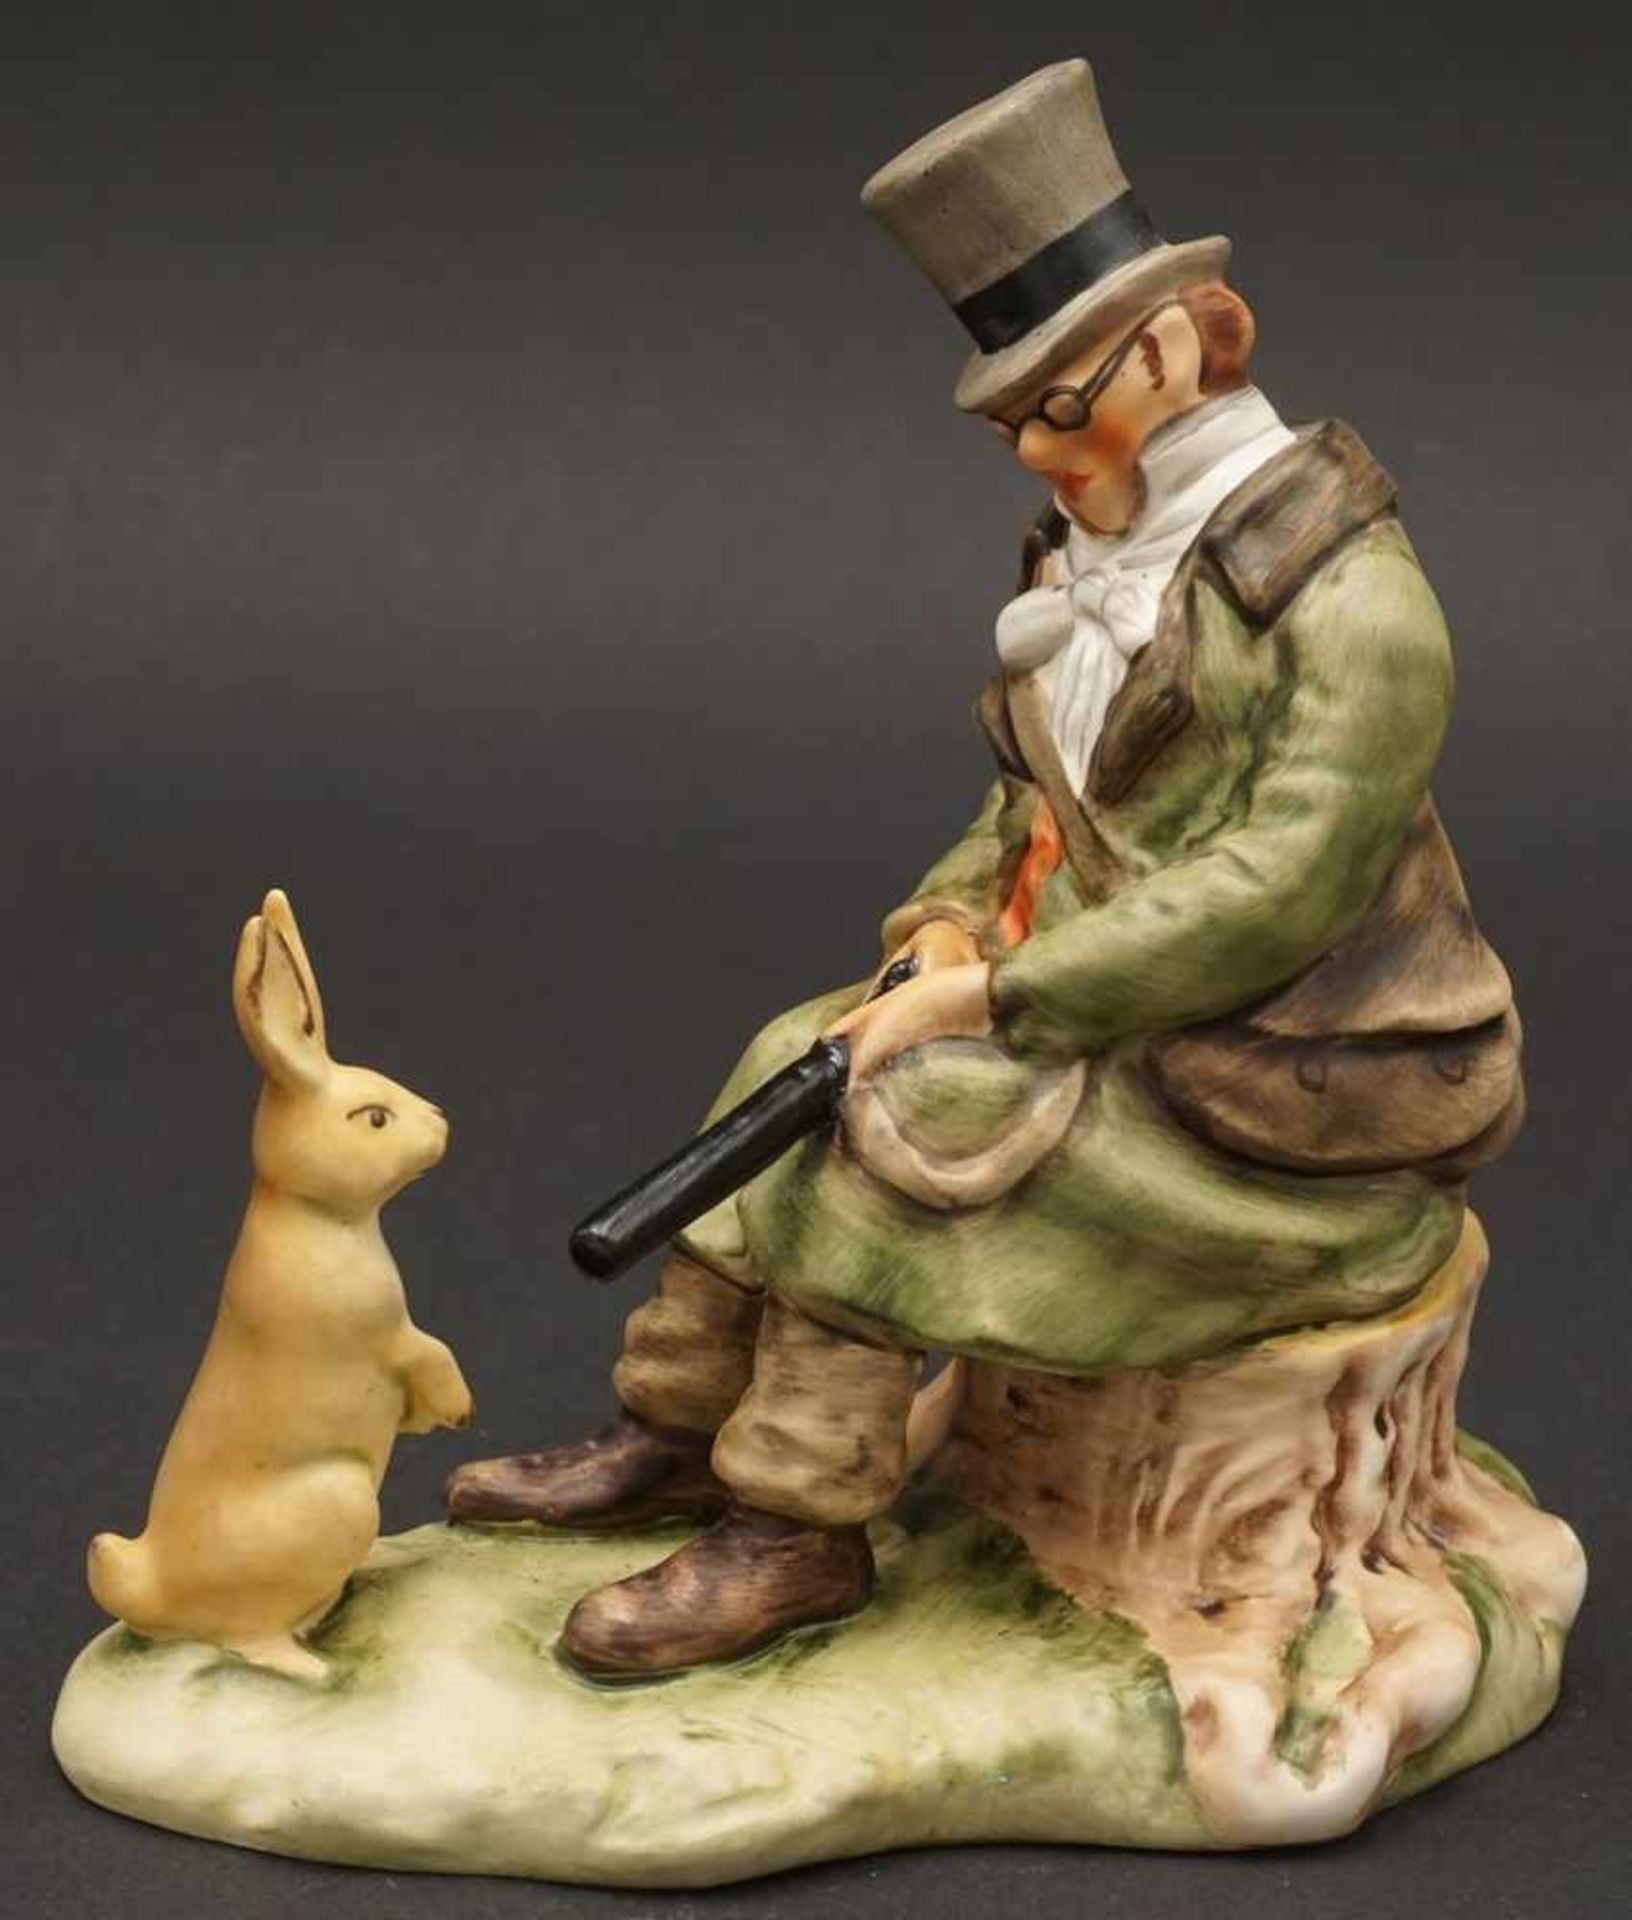 Goebel Figur "Jäger und Hase"koloriert, im Boden germarkt, Biskuitporzellan, nach C. Spitzweg, guter